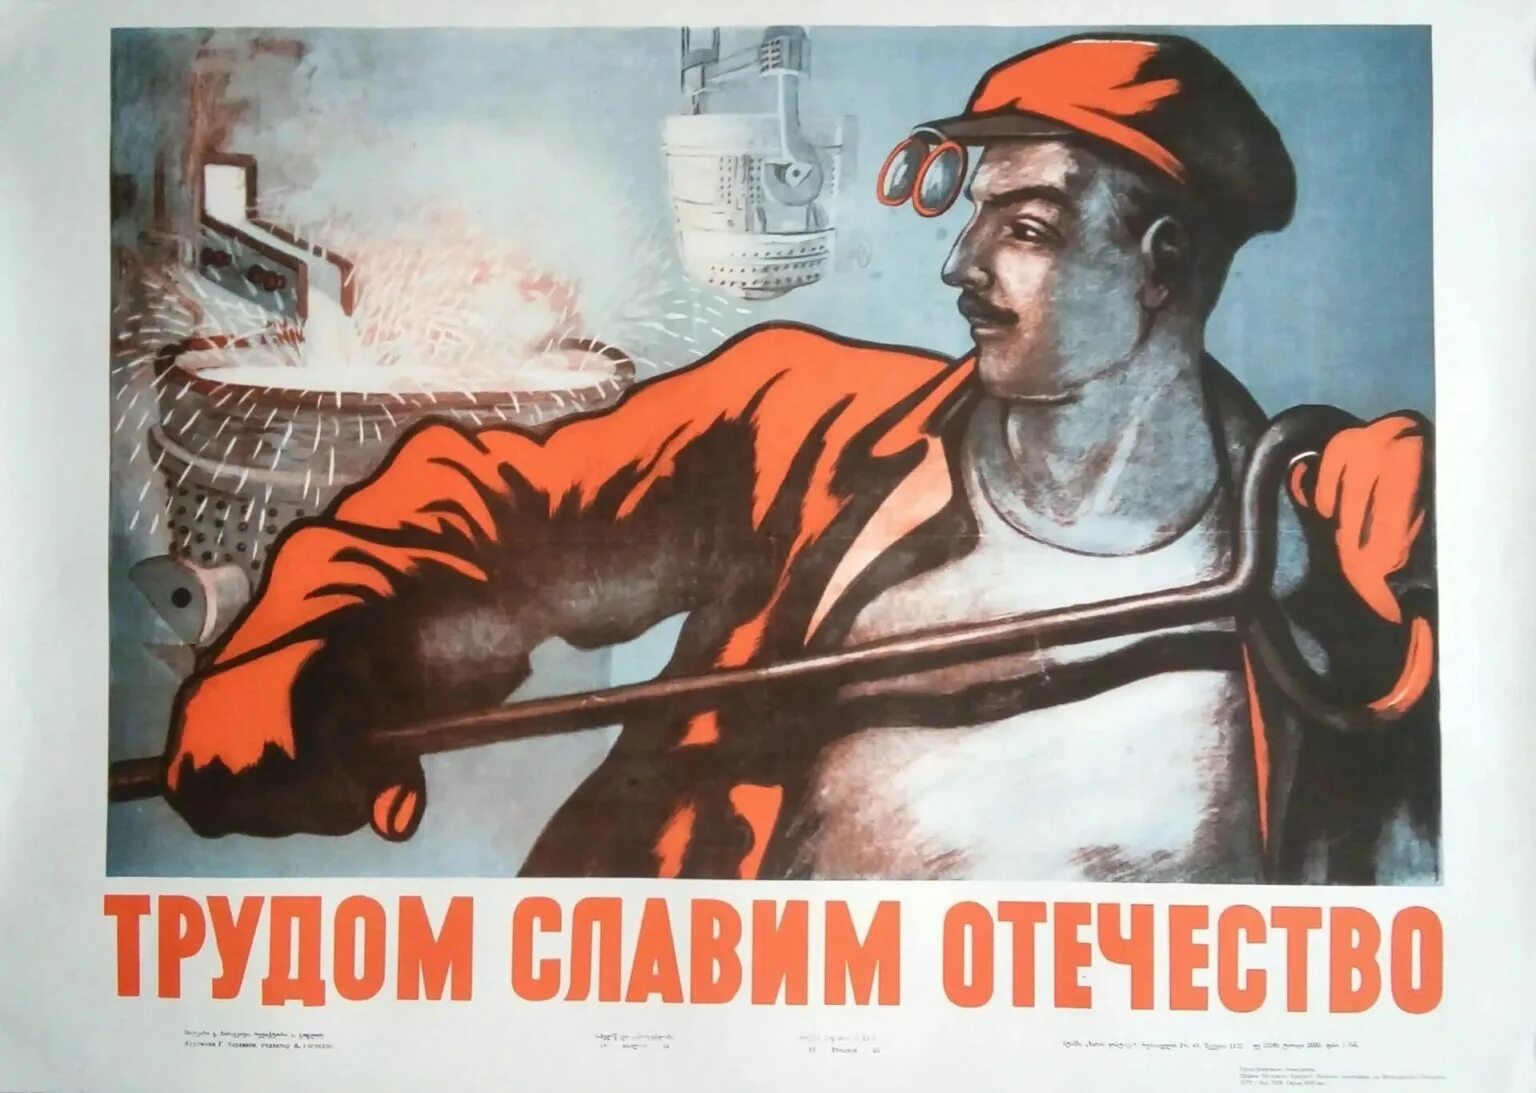 Сегодня мы выполним работу также старательно. Советские плакаты. Старые советские плакаты. Советские плакаты про труд. Советские платки.